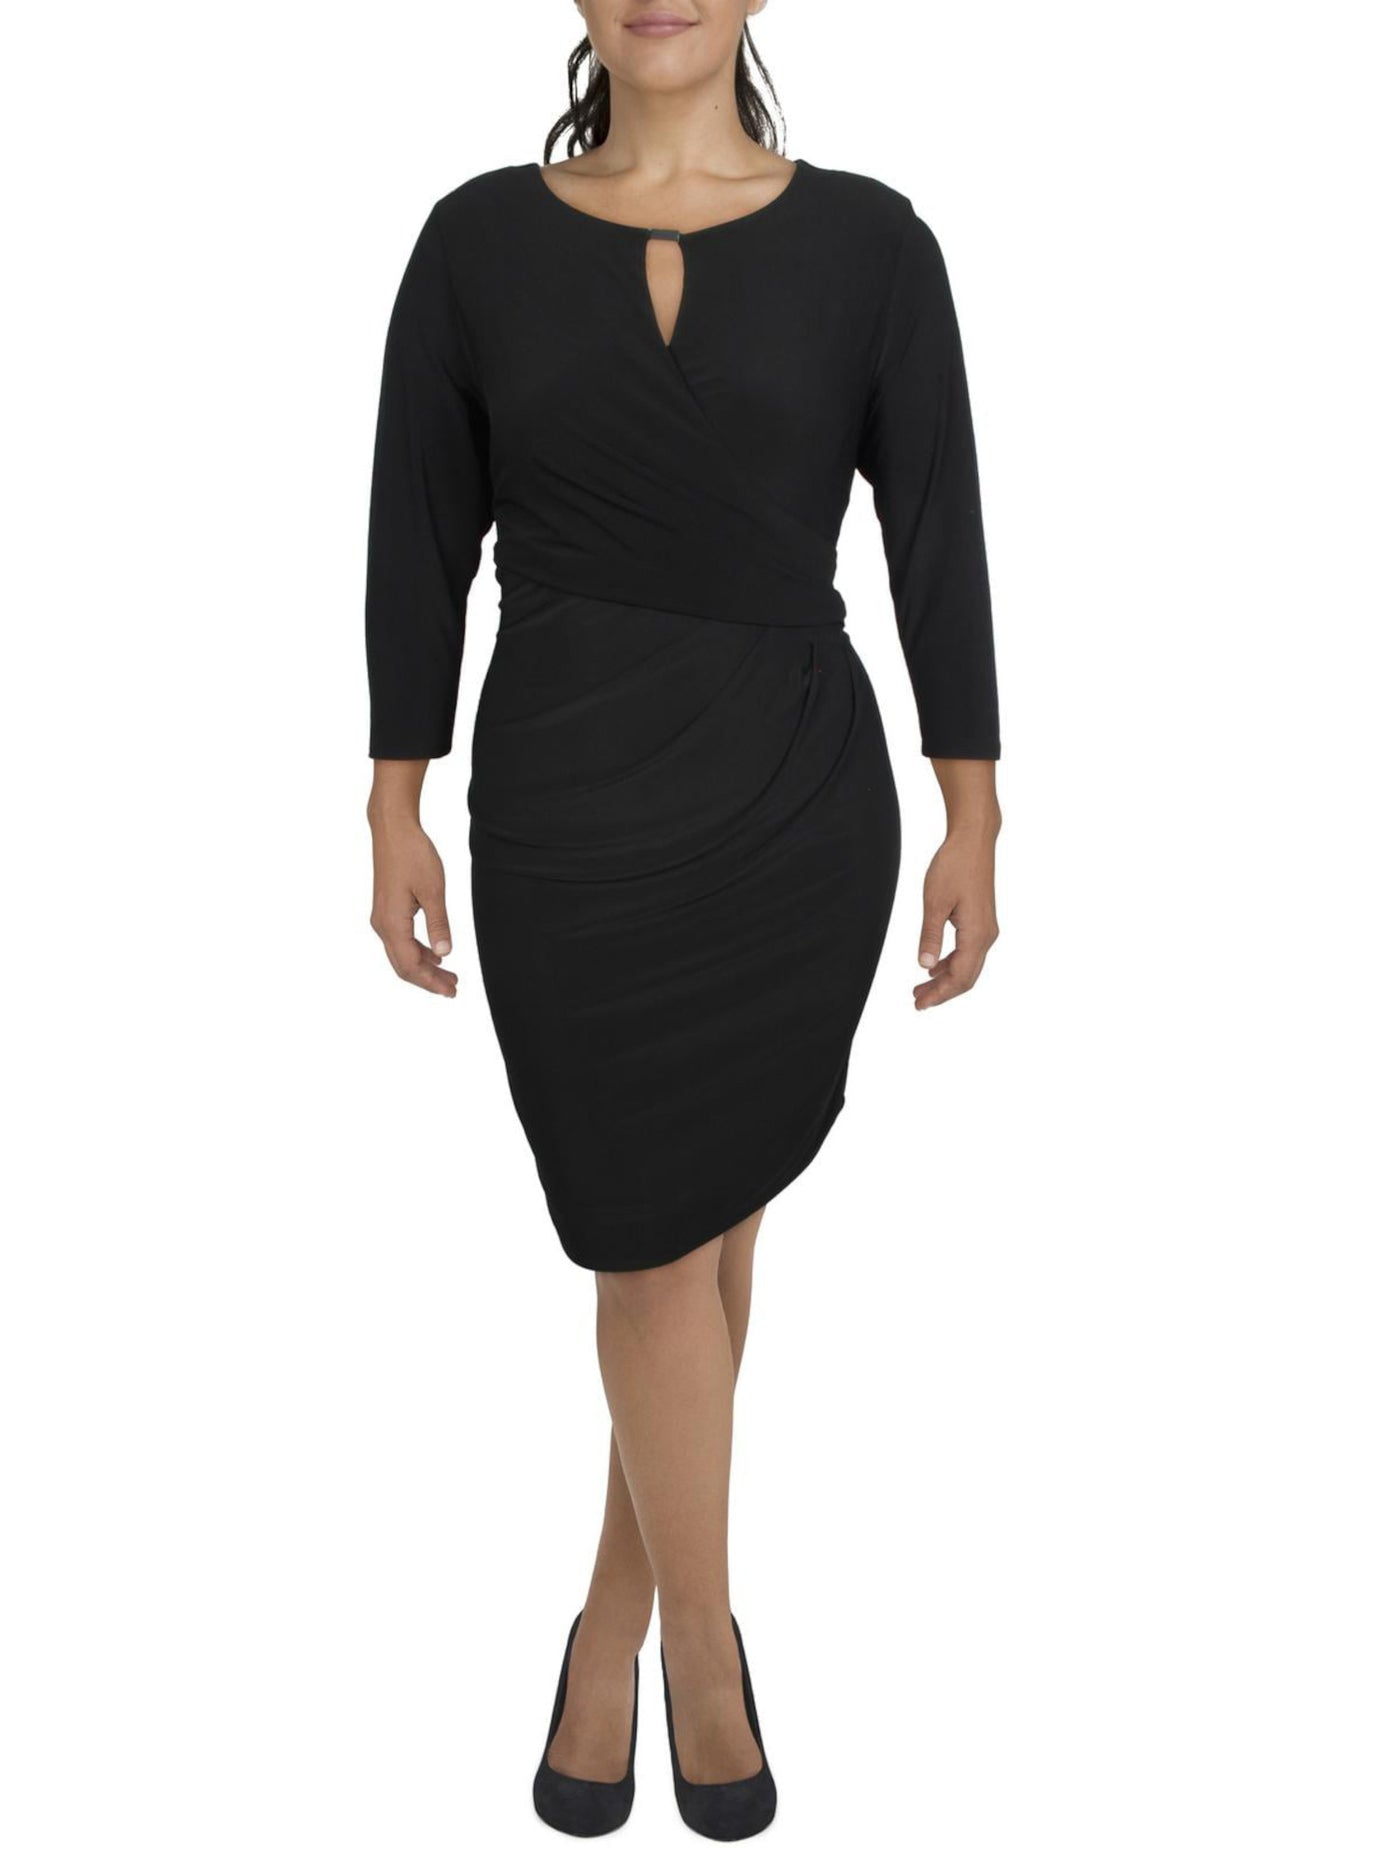 MSK Womens Black Zippered Long Sleeve Keyhole Knee Length Party Sheath Dress L